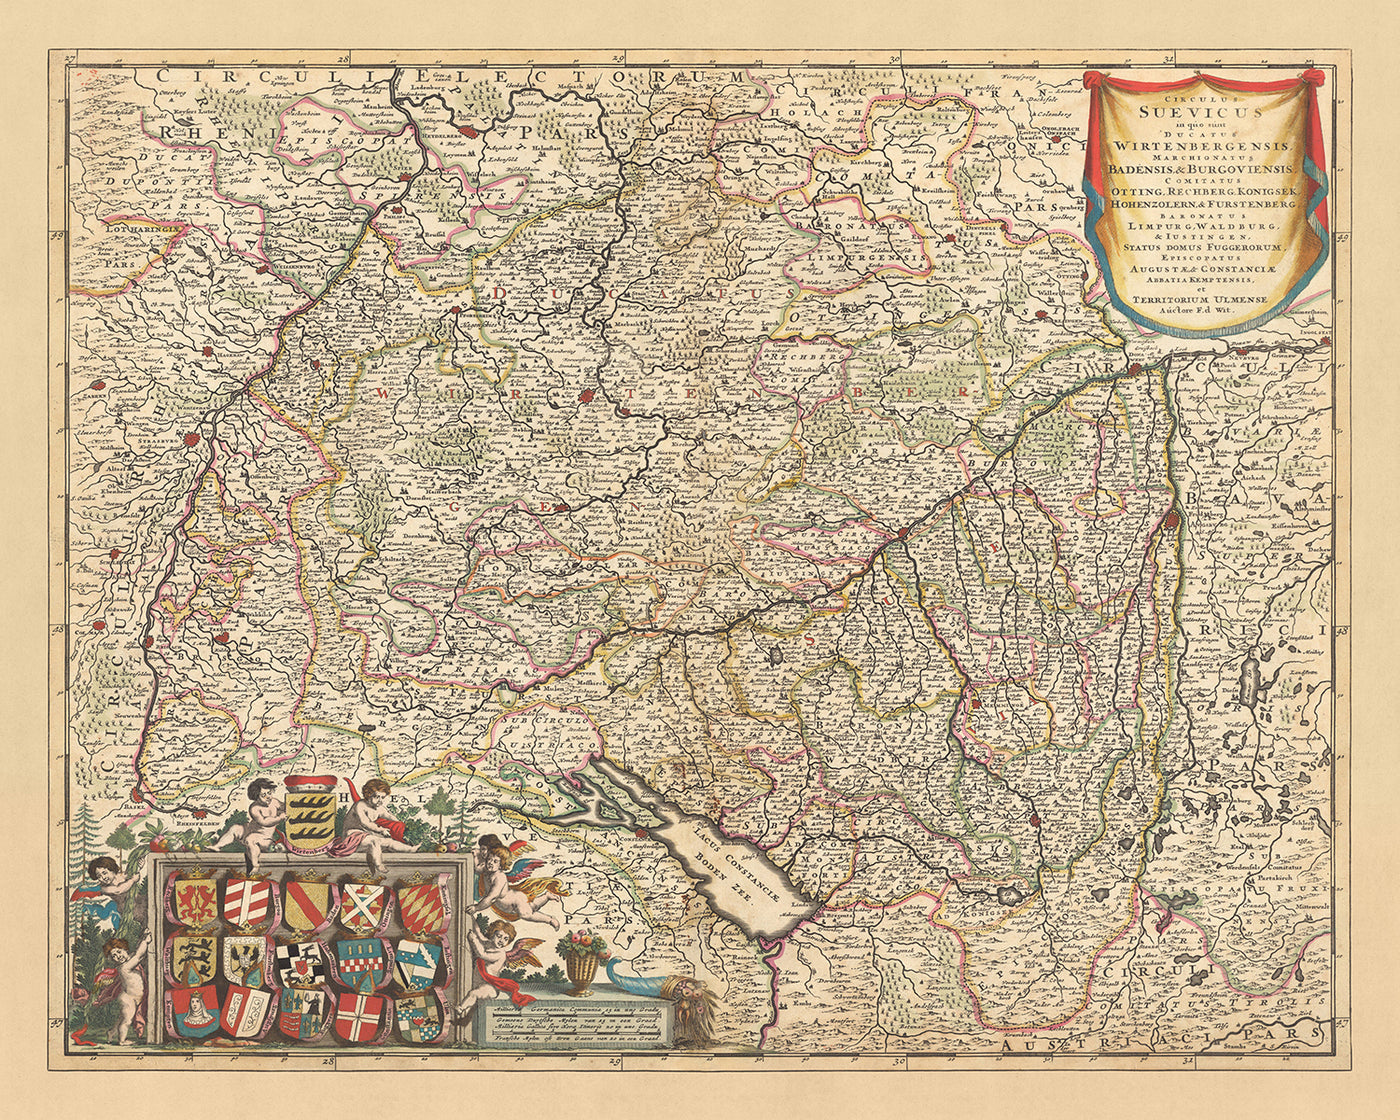 Old Map of Swabian Circle by Visscher, 1690: Stuttgart, Mannheim, Augsburg, Karlsruhe, Strasbourg